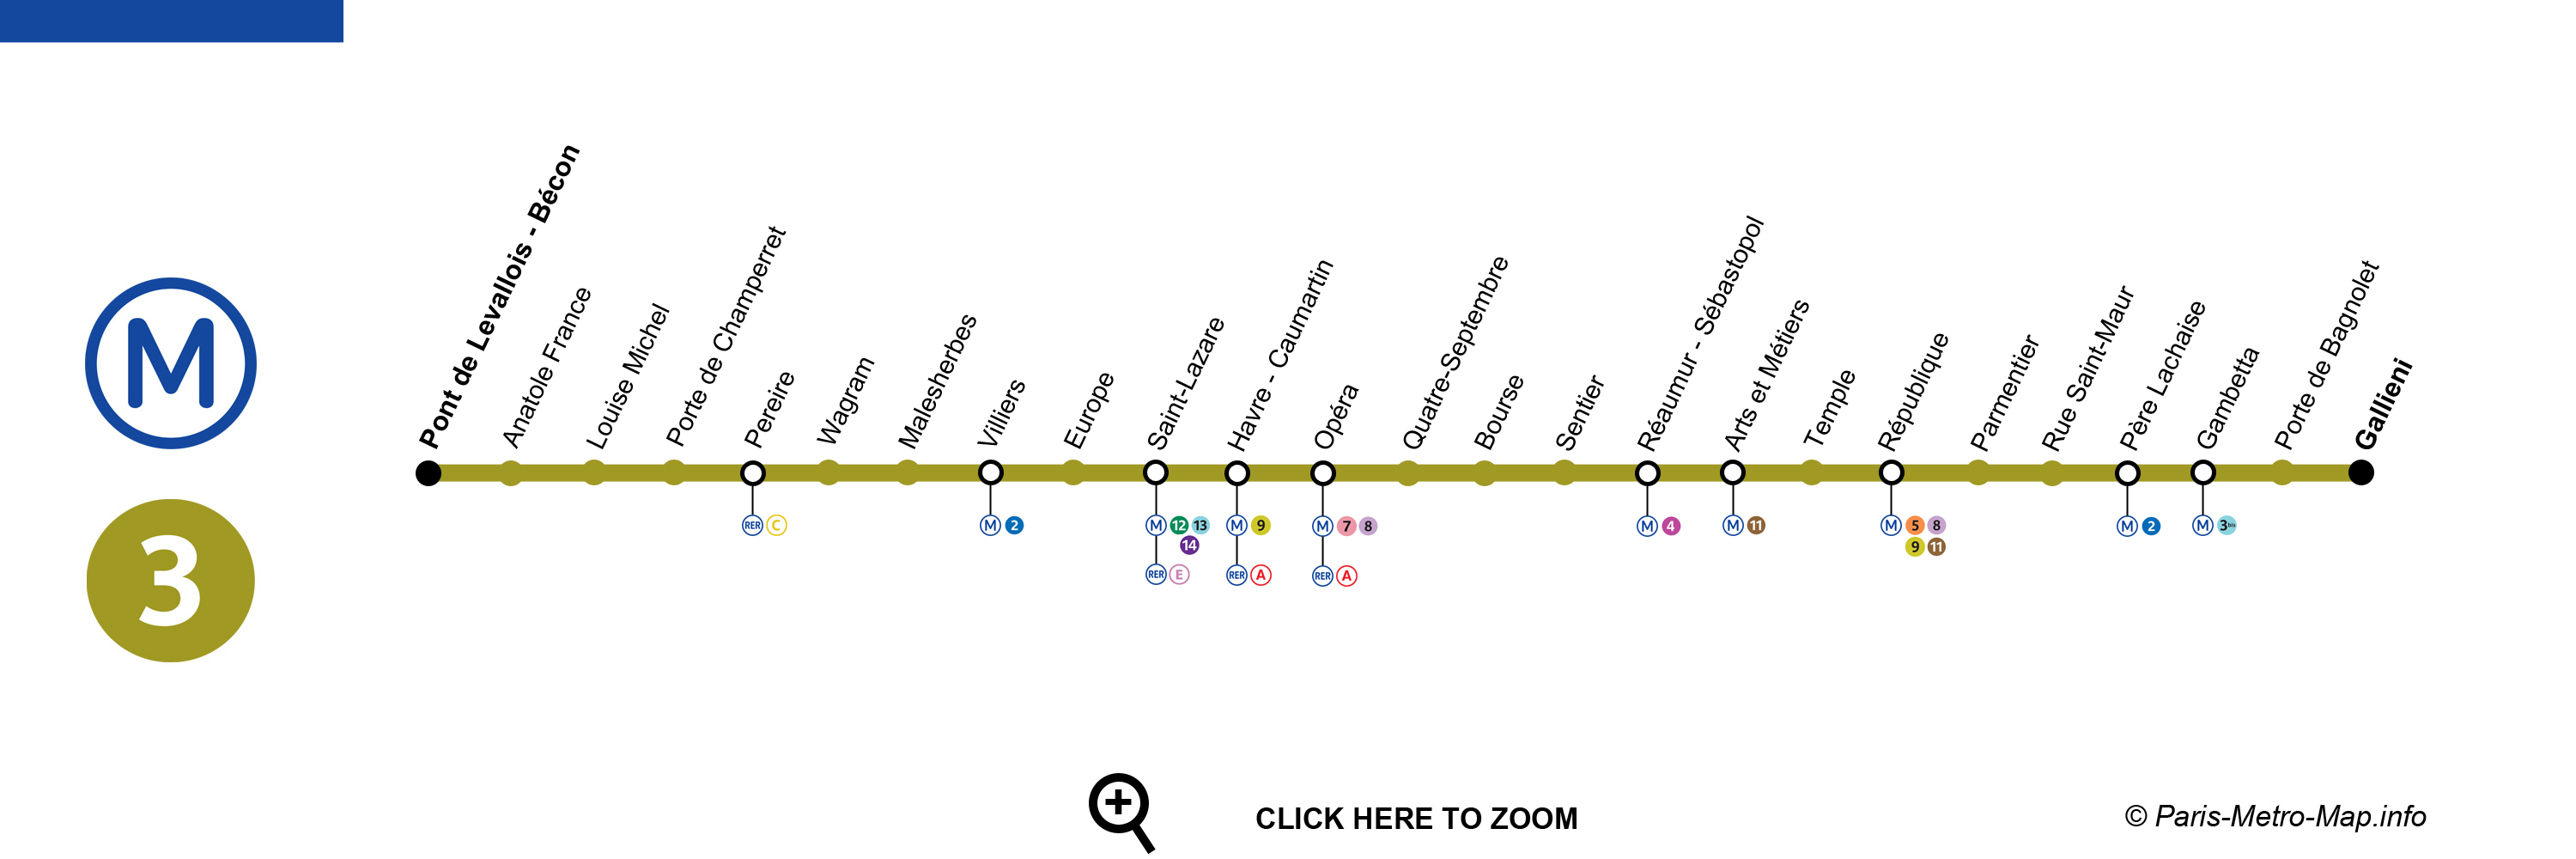 Paris metro line 3 map